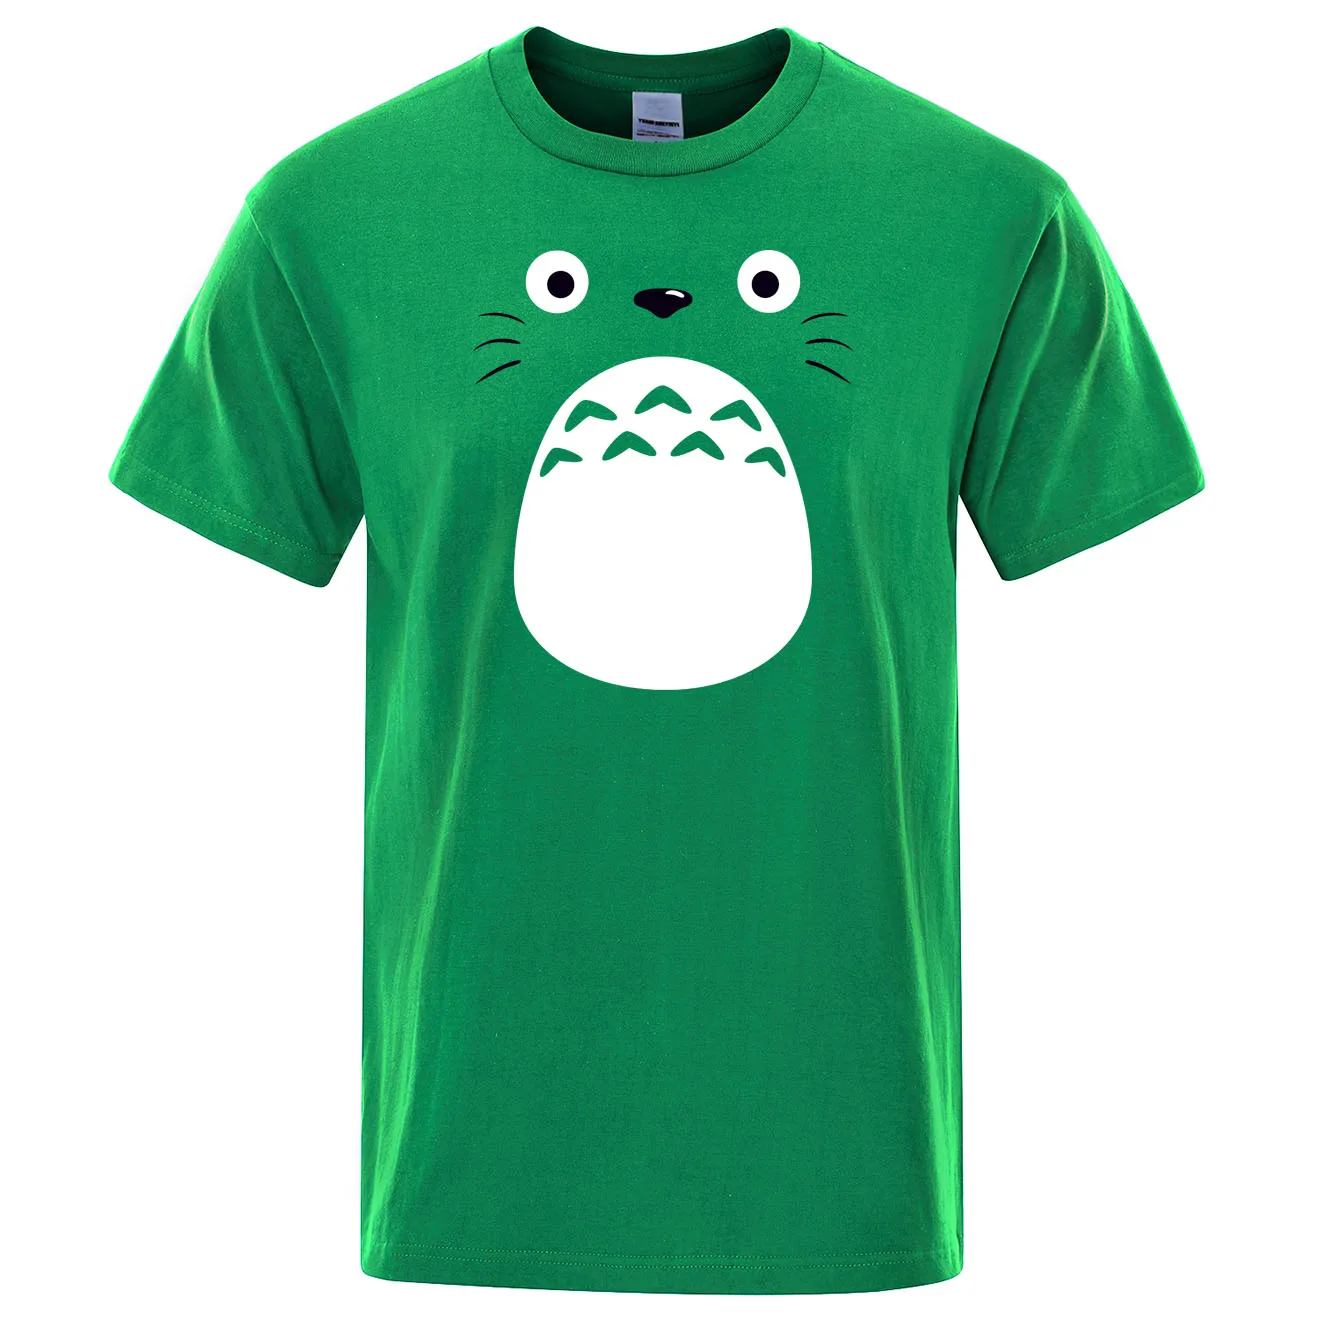 Футболка с японским аниме «Унесенные призраками», футболки с Тоторо, Хаяо Миядзаки, одежда с героями мультфильмов, Studio Ghibli, футболка для мужчин, Harajuku, топы, футболки - Цвет: green 6